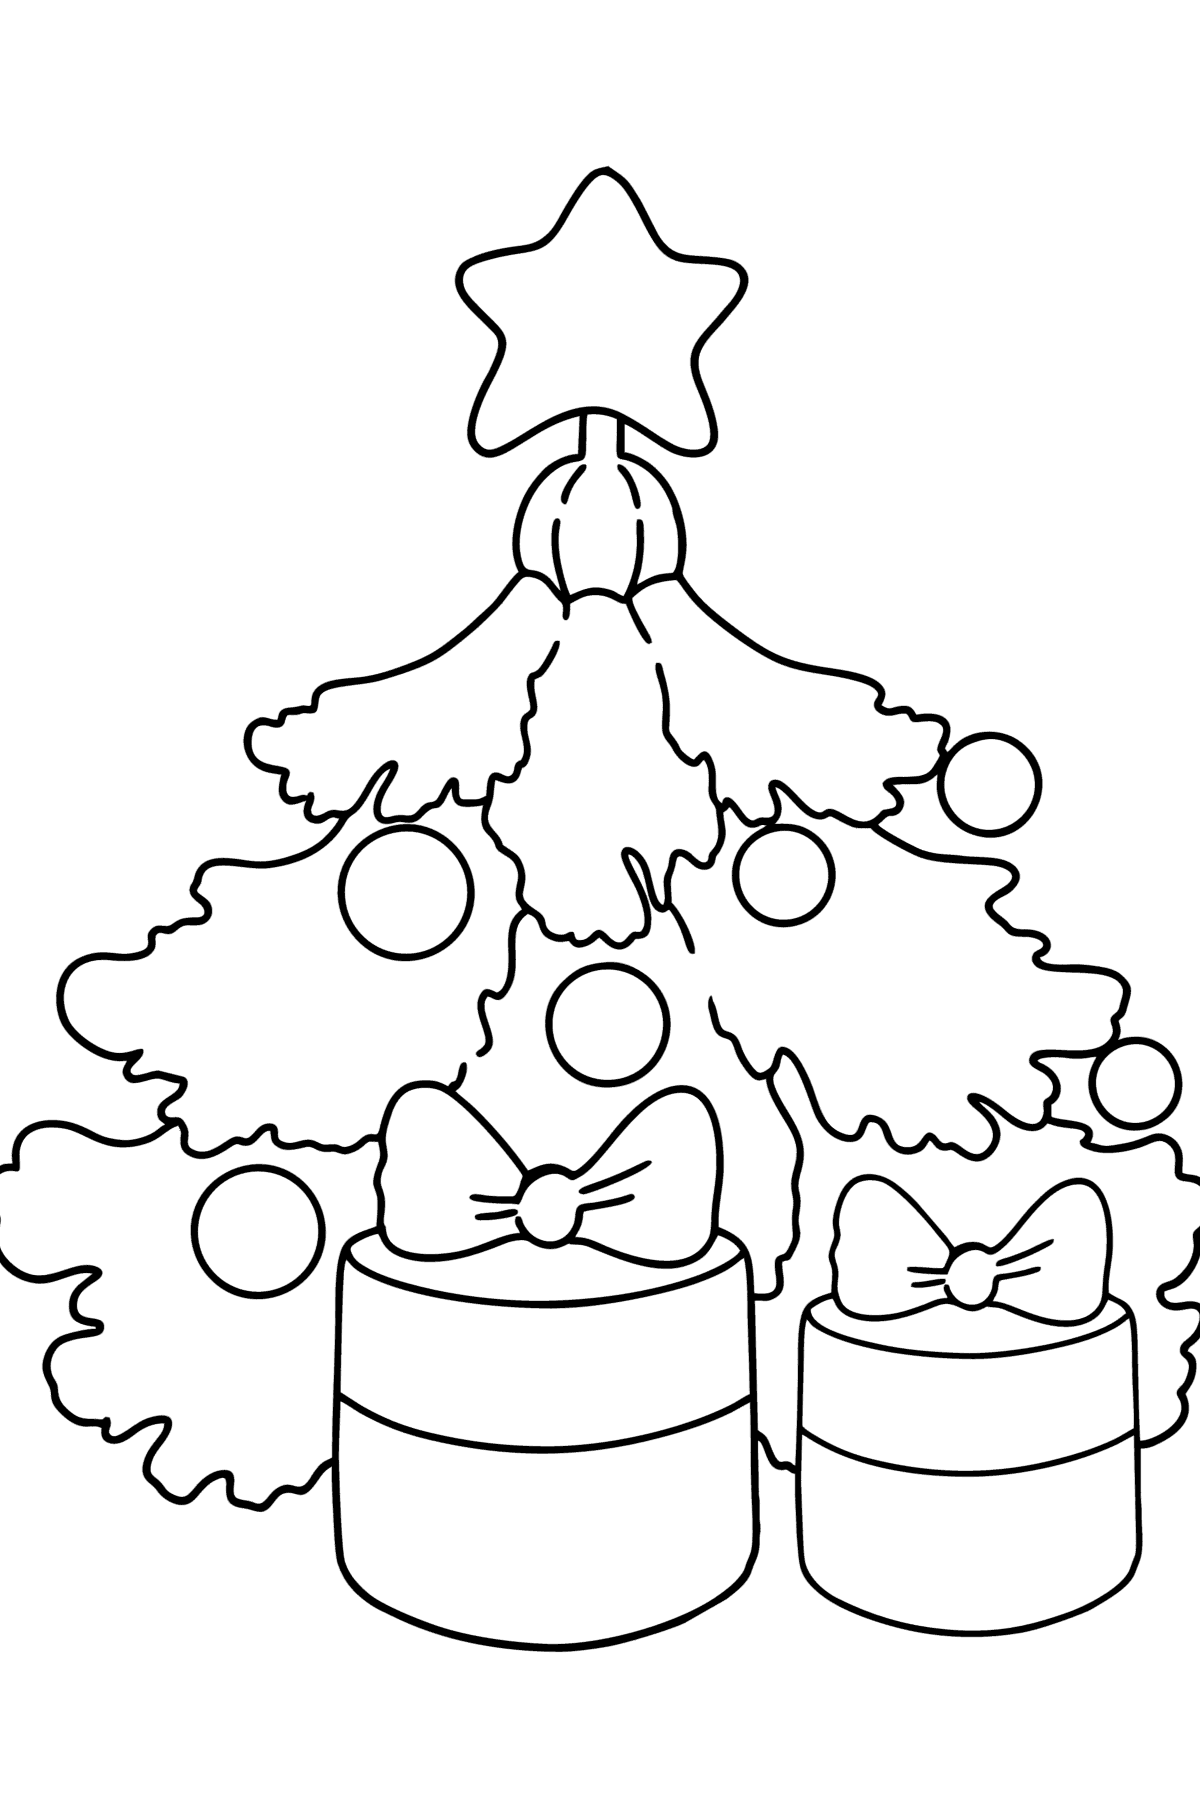 Kleurplaat Kerstboom en cadeaus - kleurplaten voor kinderen